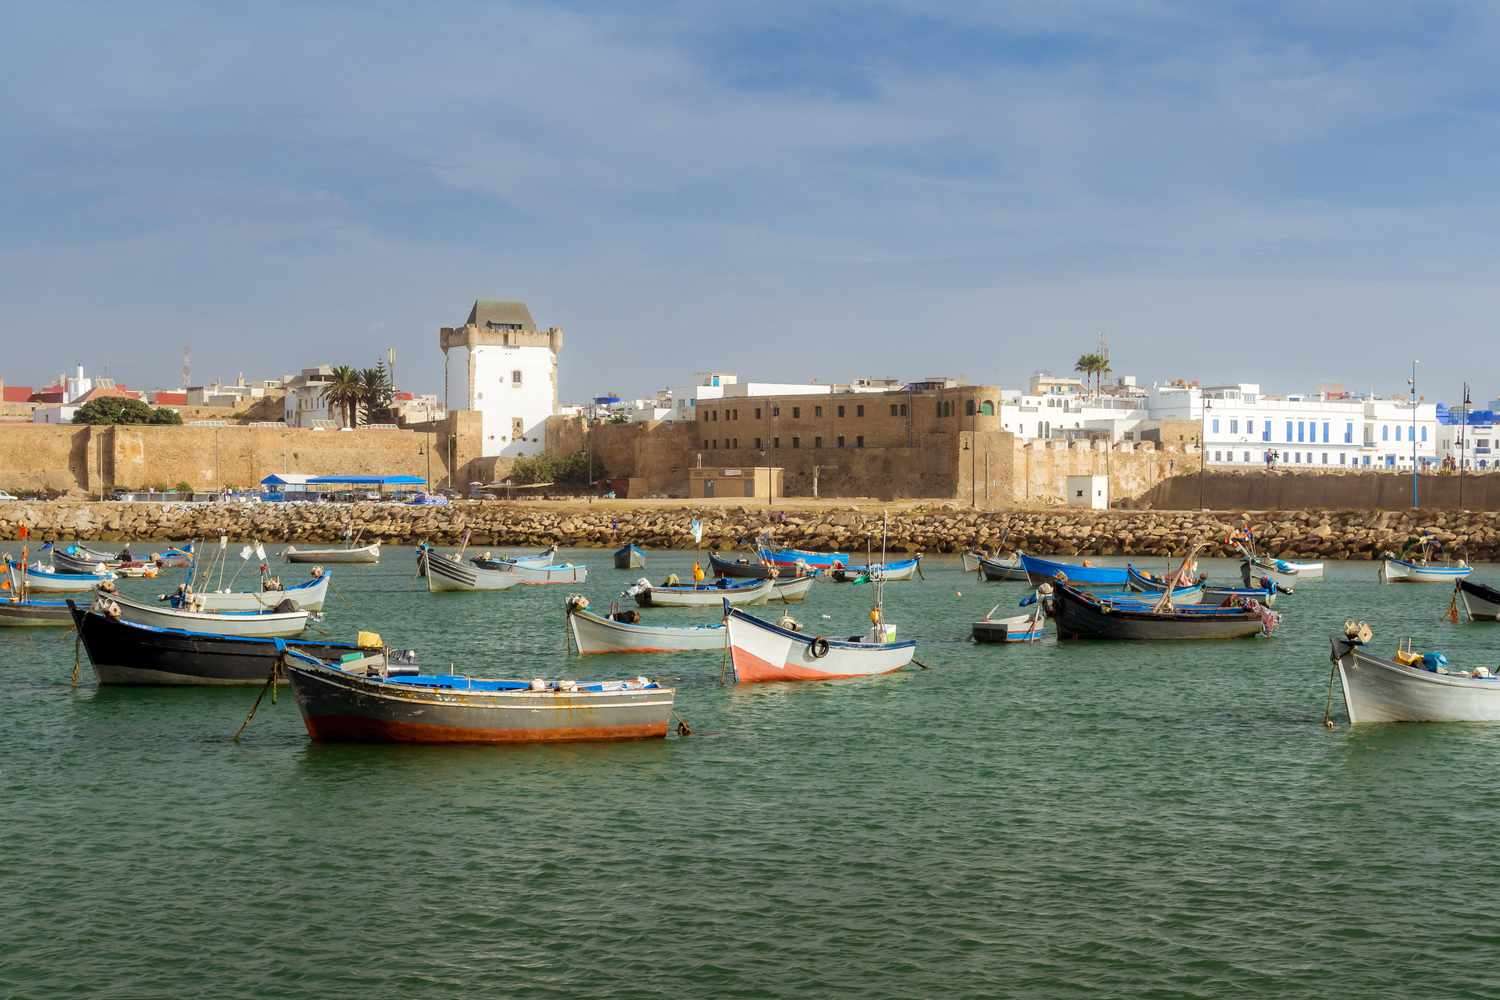 Asilah v Maroku v Africe online puzzle